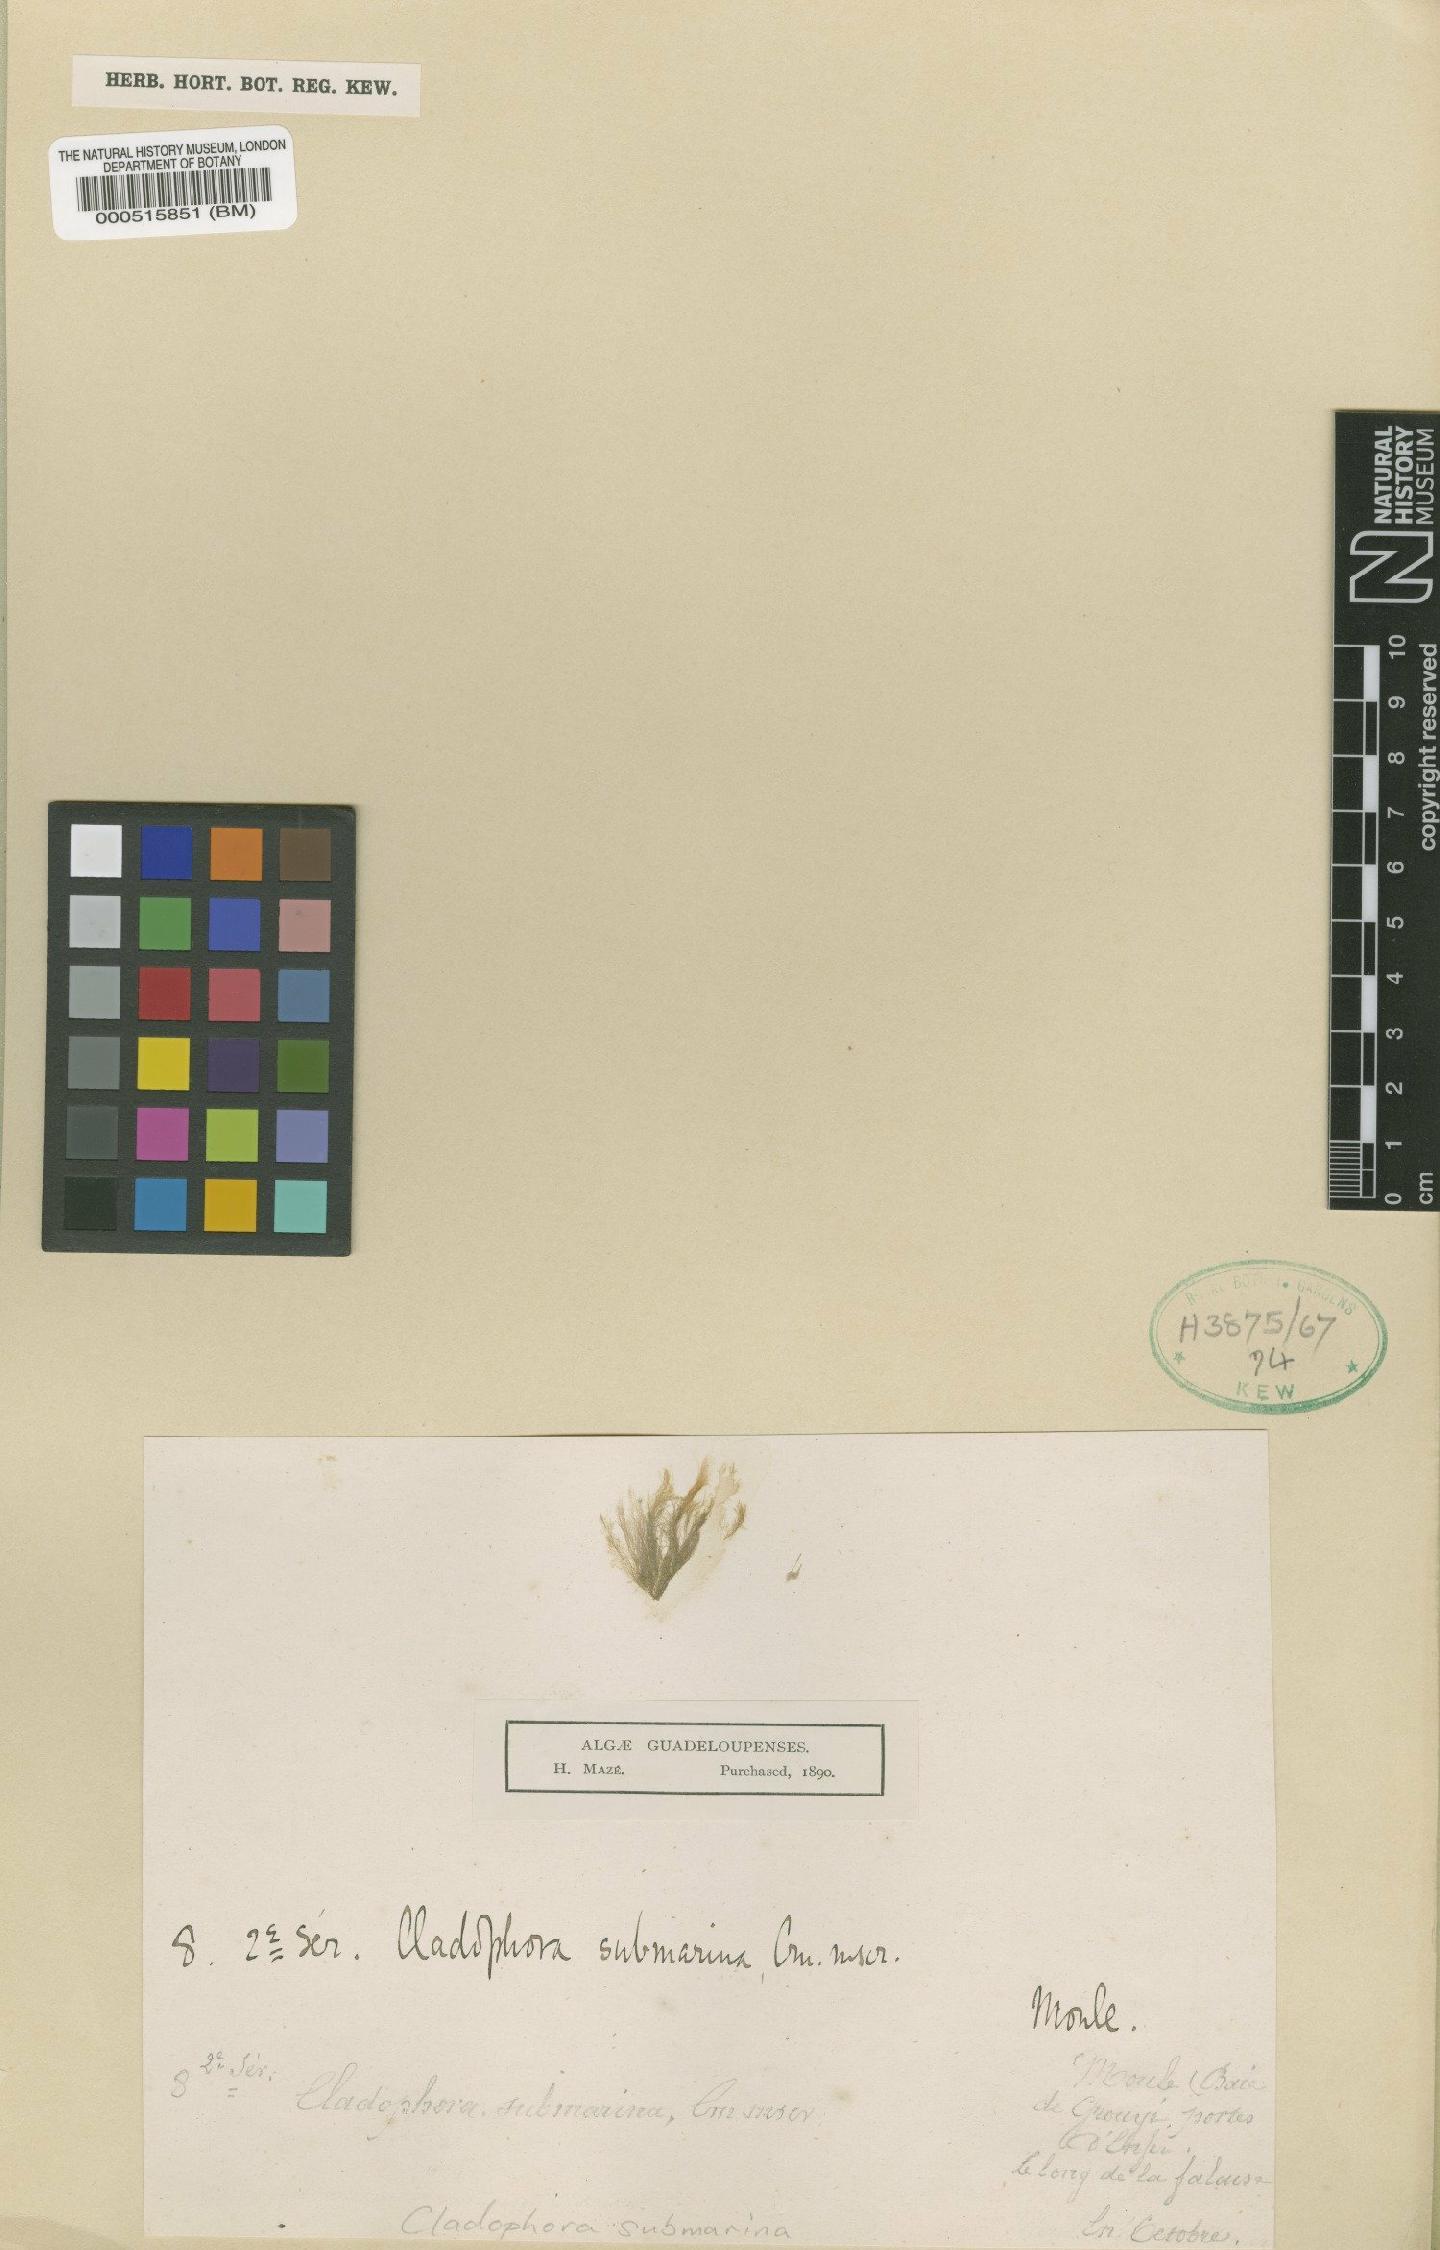 To NHMUK collection (Cladophora submarina P.Crouan & H.Crouan; Type; NHMUK:ecatalogue:4829542)